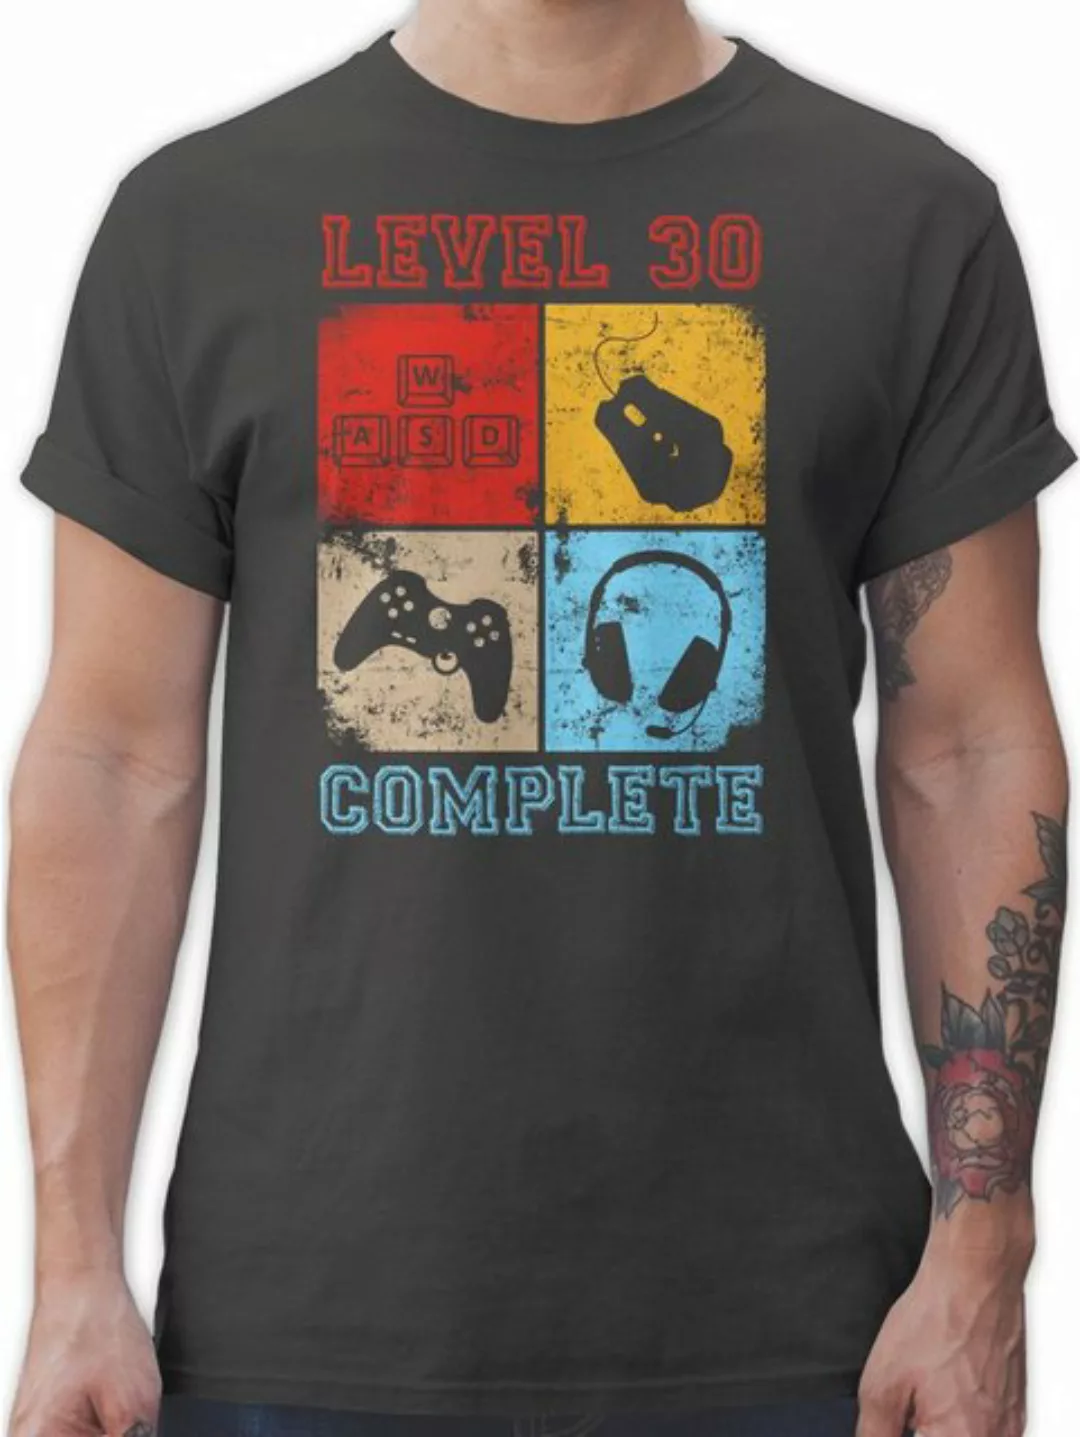 Shirtracer T-Shirt Level 30 Complete Completed 30. Geburtstag günstig online kaufen